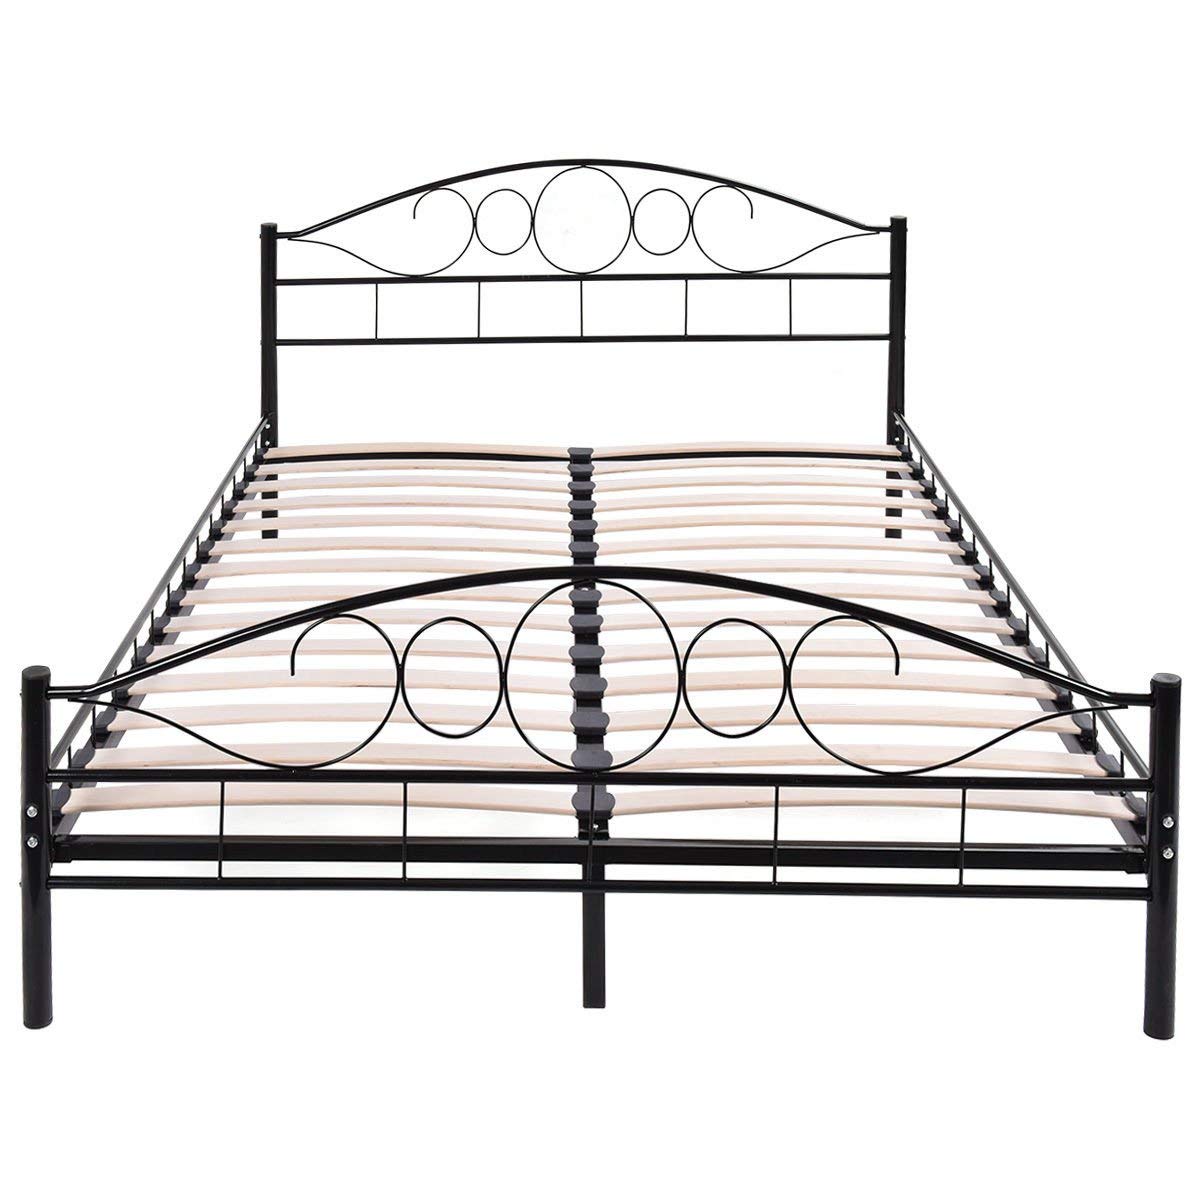 Kovový posteľový rám s lamelami v rôznych veľkostiach a farbách, 160x200 cm, Mimi, čierny